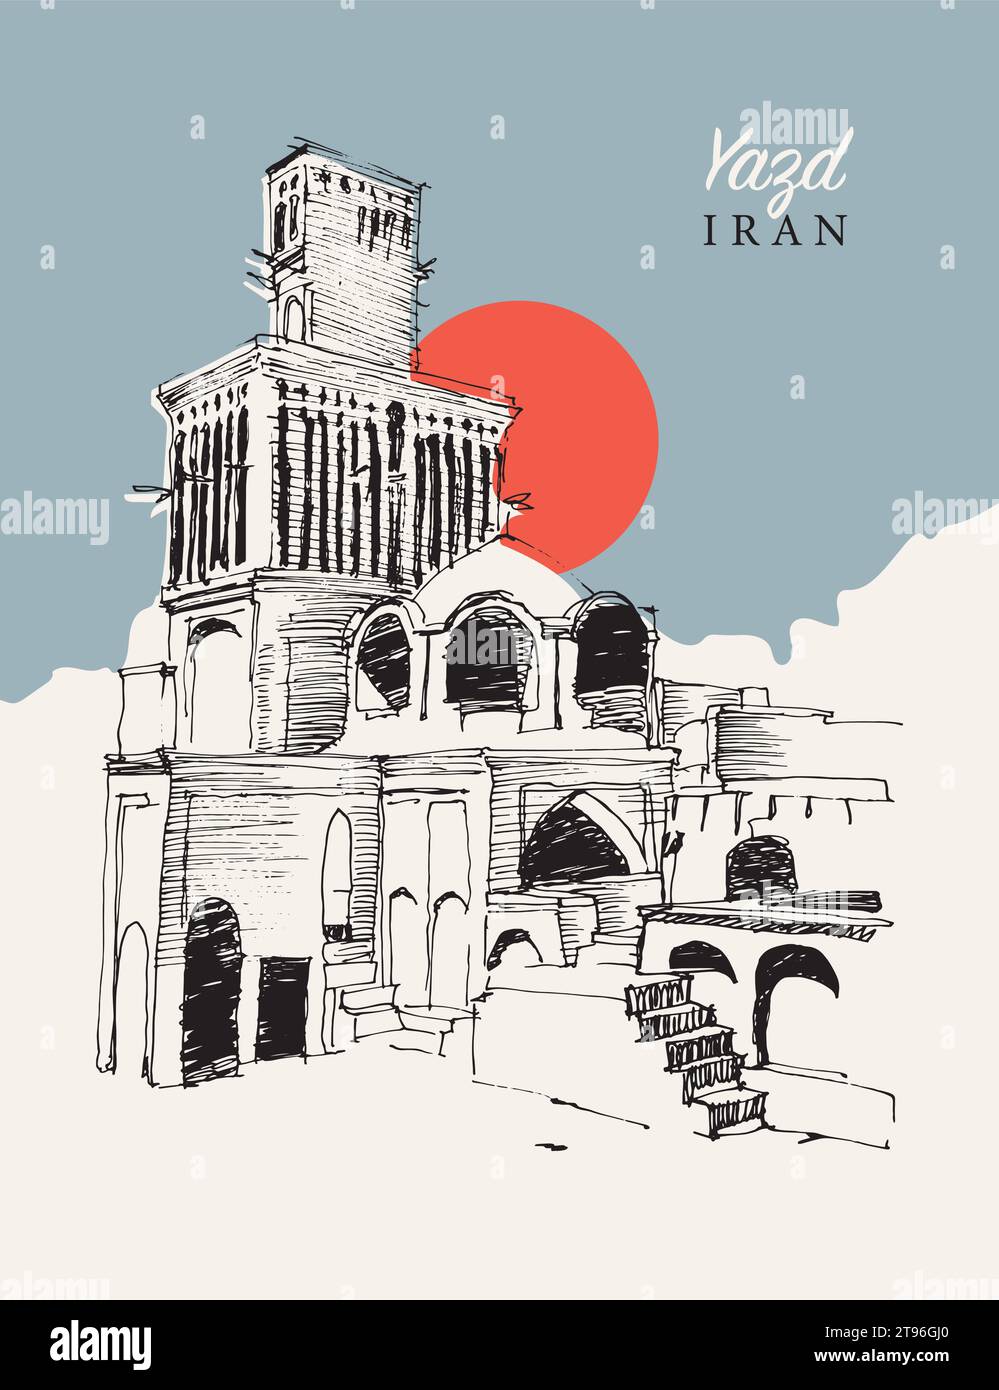 Illustrazione di uno schizzo vettoriale disegnato a mano della città di Yazd in Iran, famosa per le sue torri di cattura del vento e l'architettura unica. Illustrazione Vettoriale